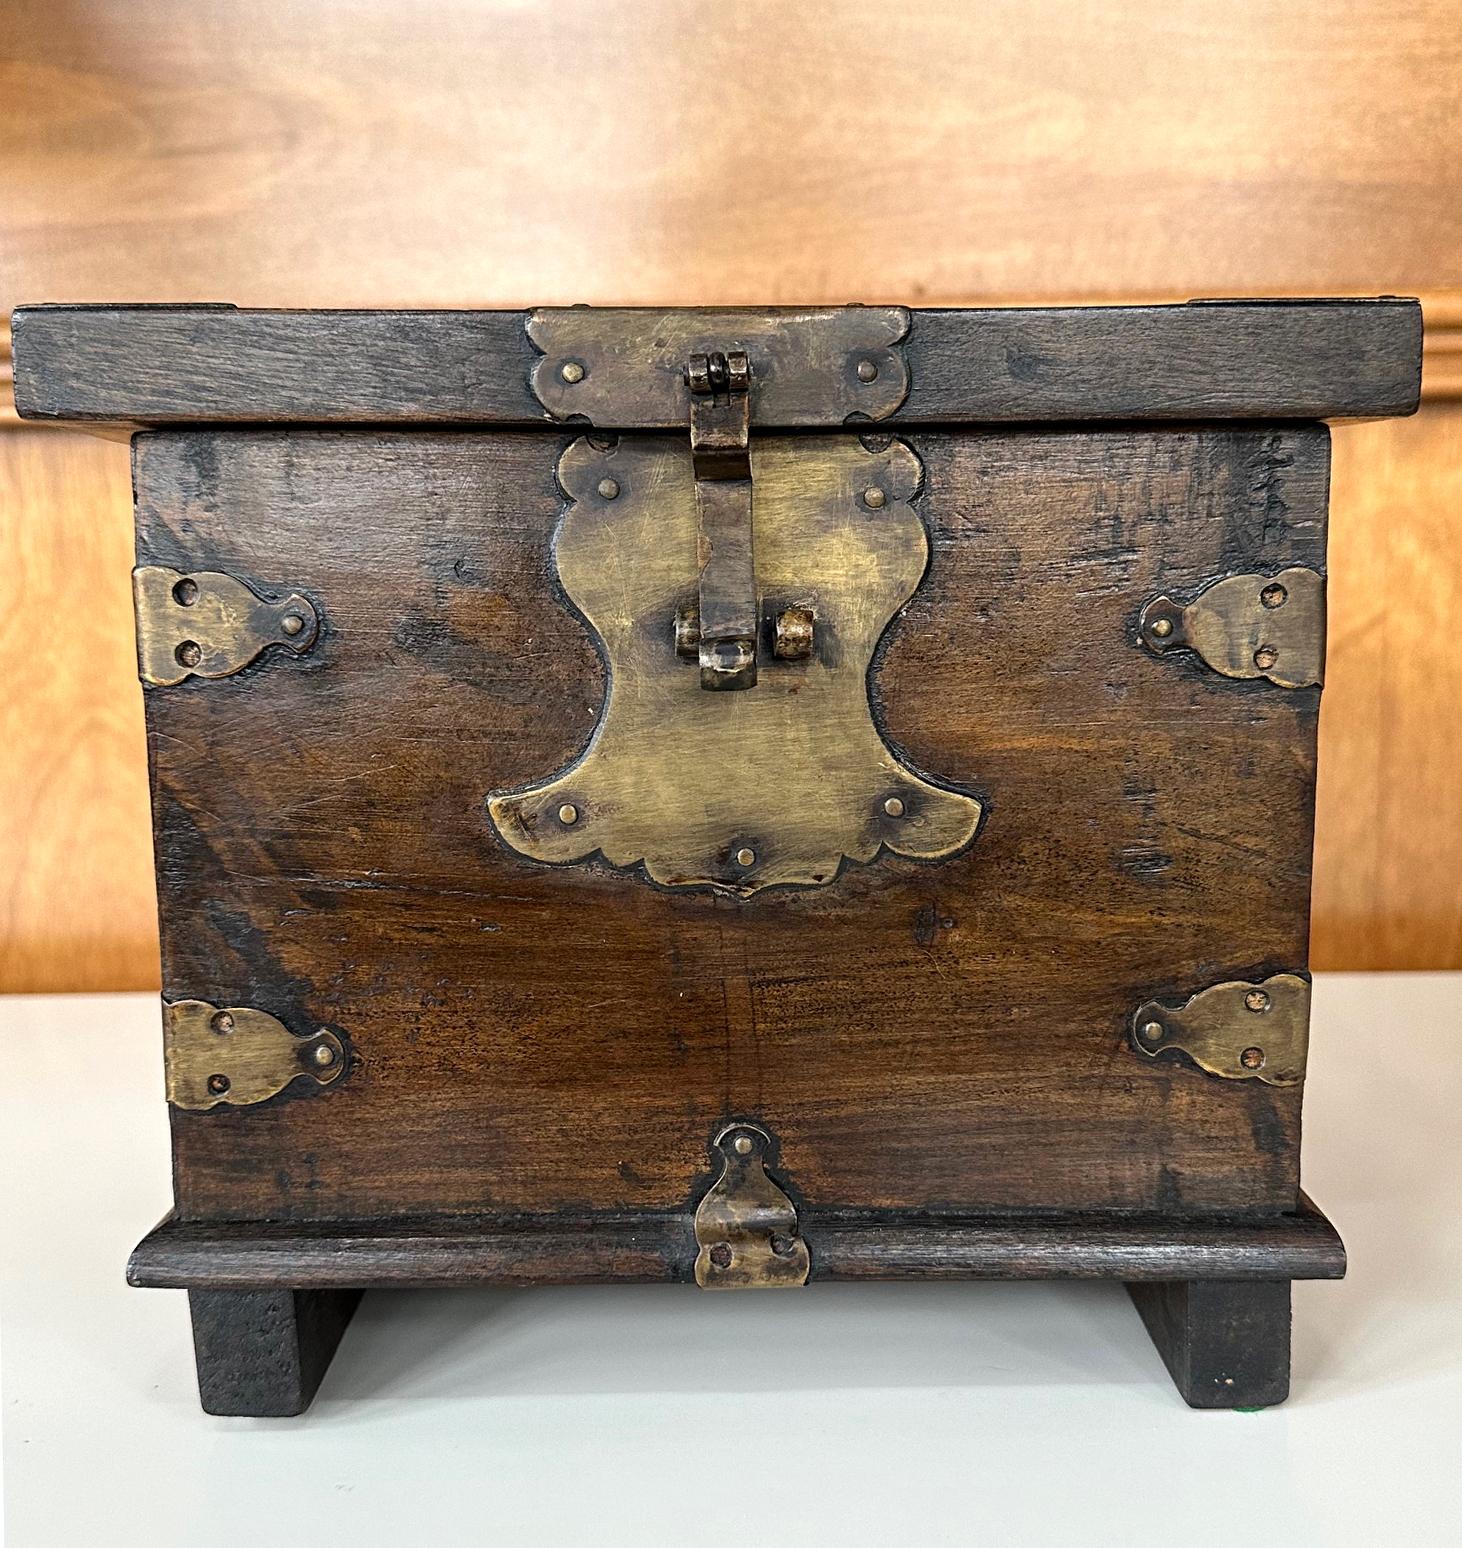 Petite boîte antique coréenne datant de la fin du XIXe siècle de la dynastie Joseon. La boîte de forme carrée a été construite avec d'épaisses planches de bois dur sur tous les côtés (il semble que ce soit de l'orme) avec une partie supérieure